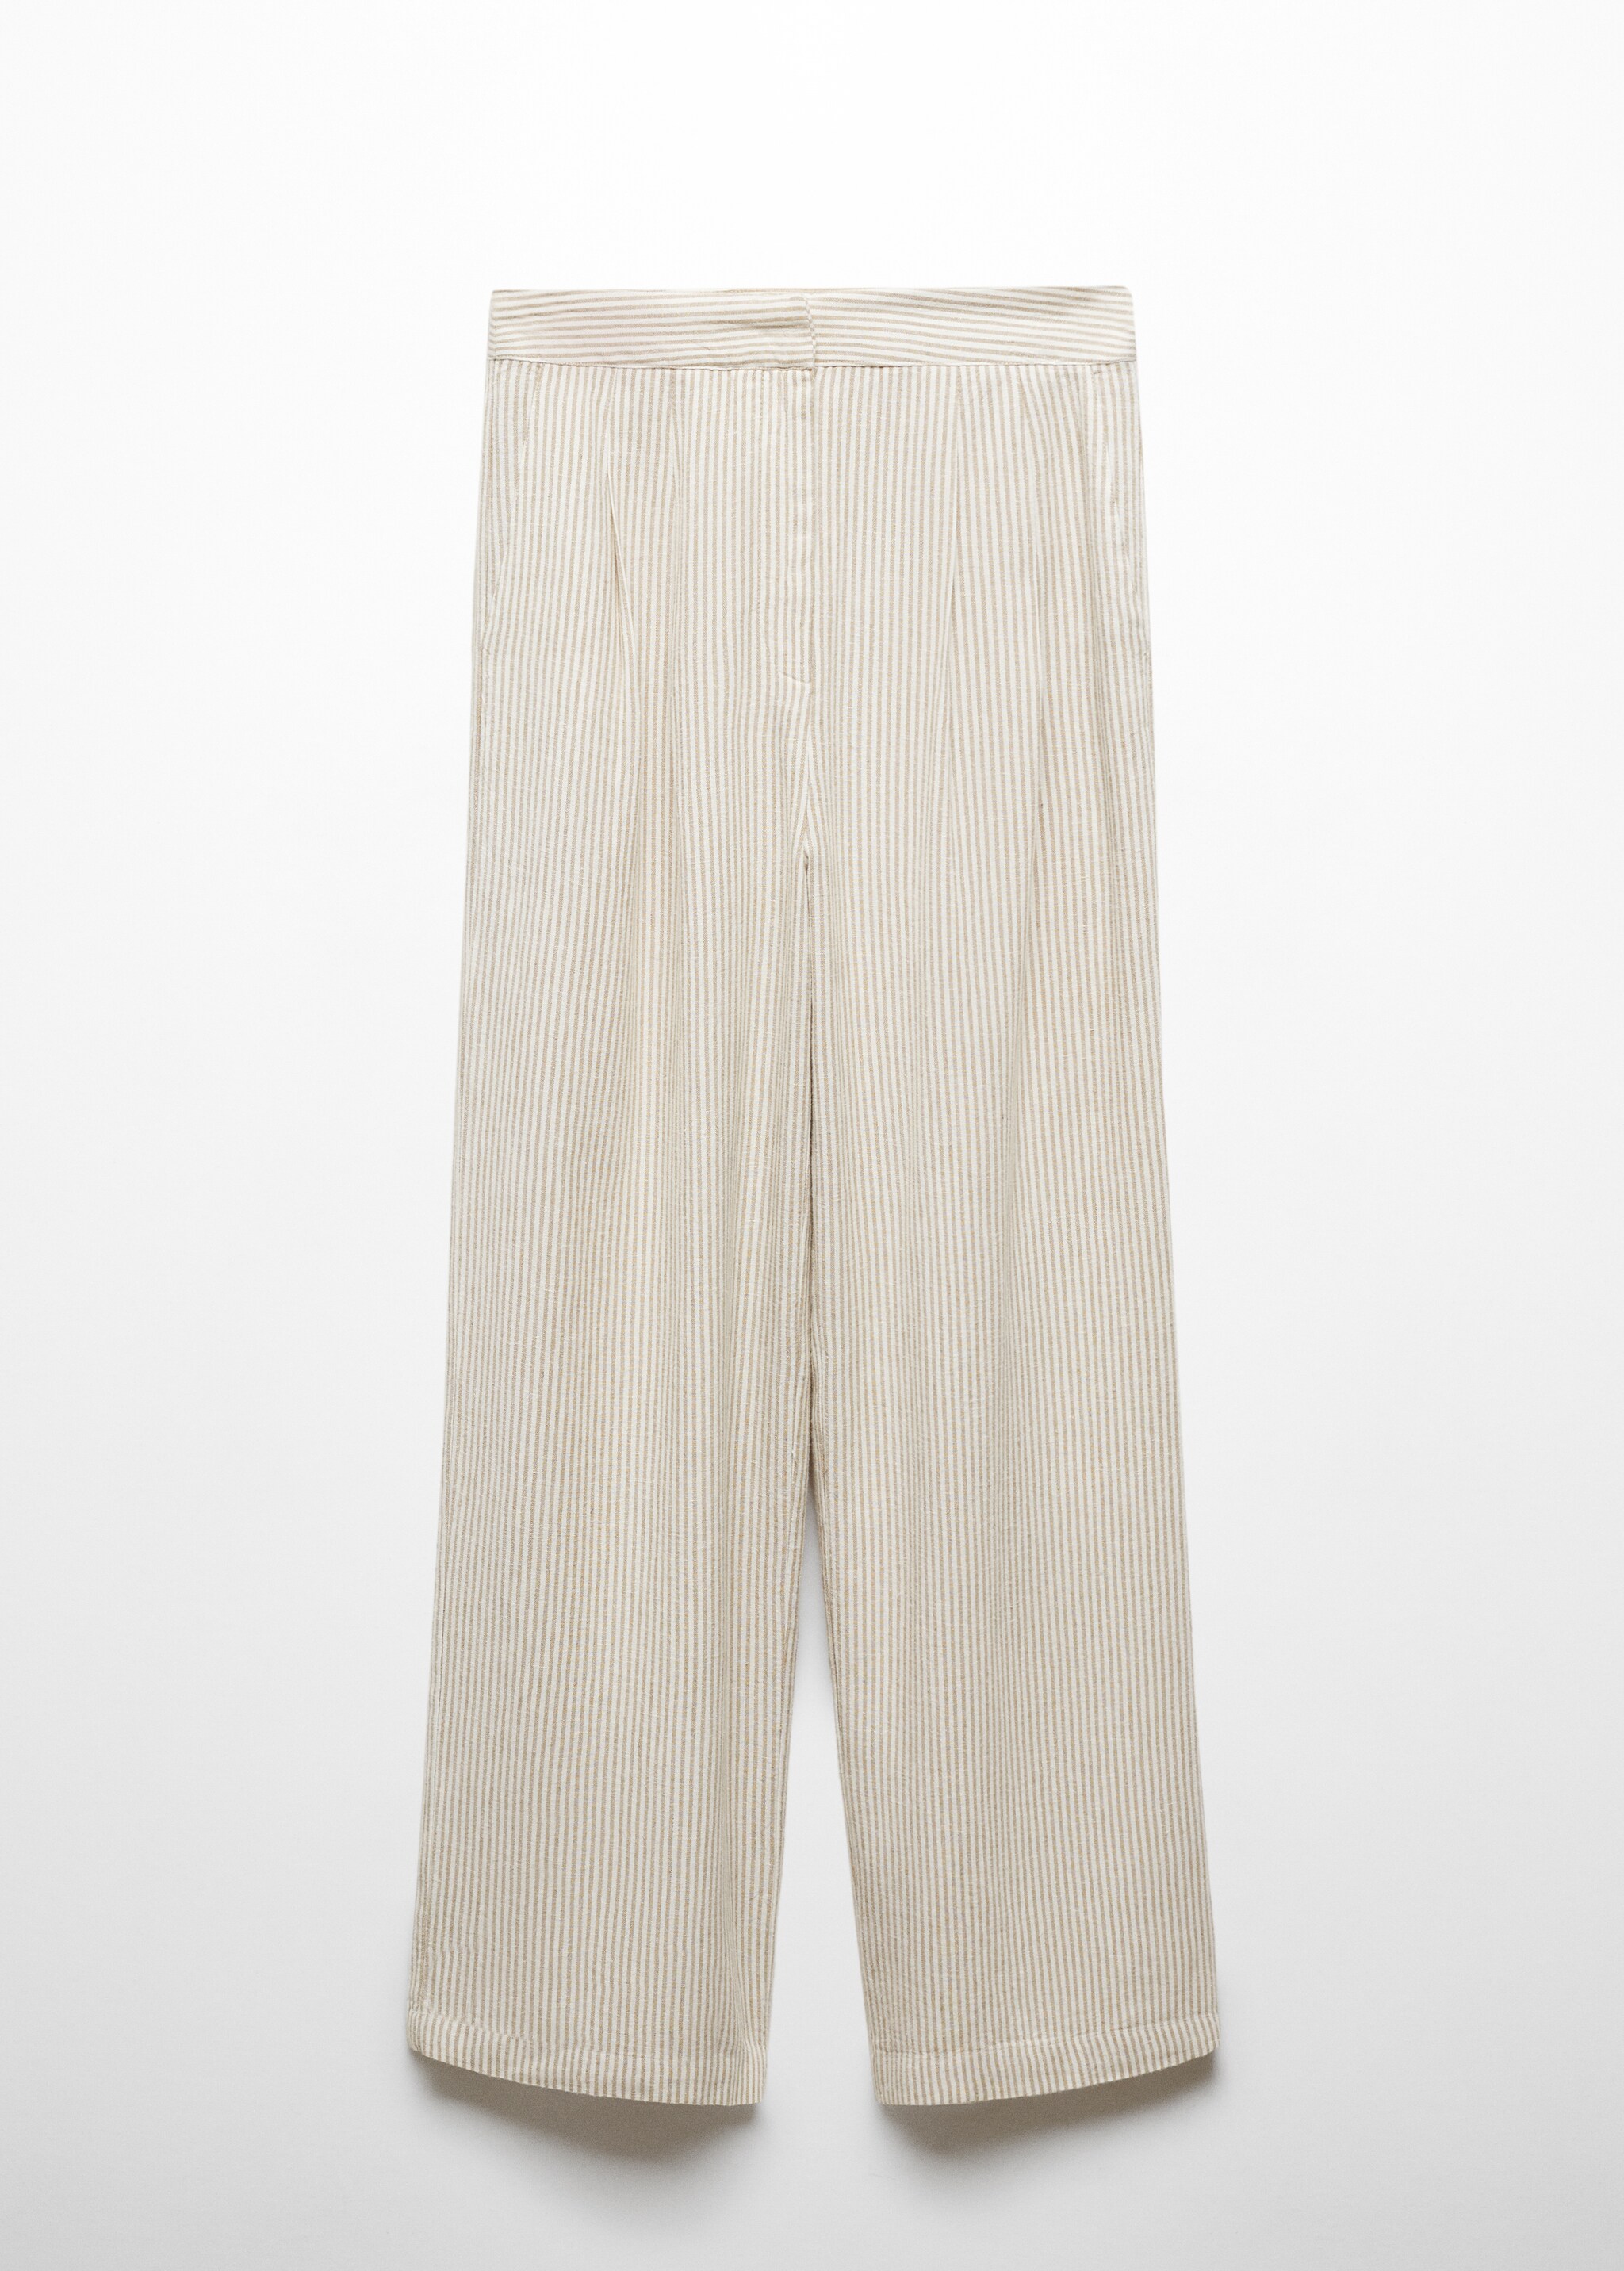 Pantalón traje lino rayas - Artículo sin modelo